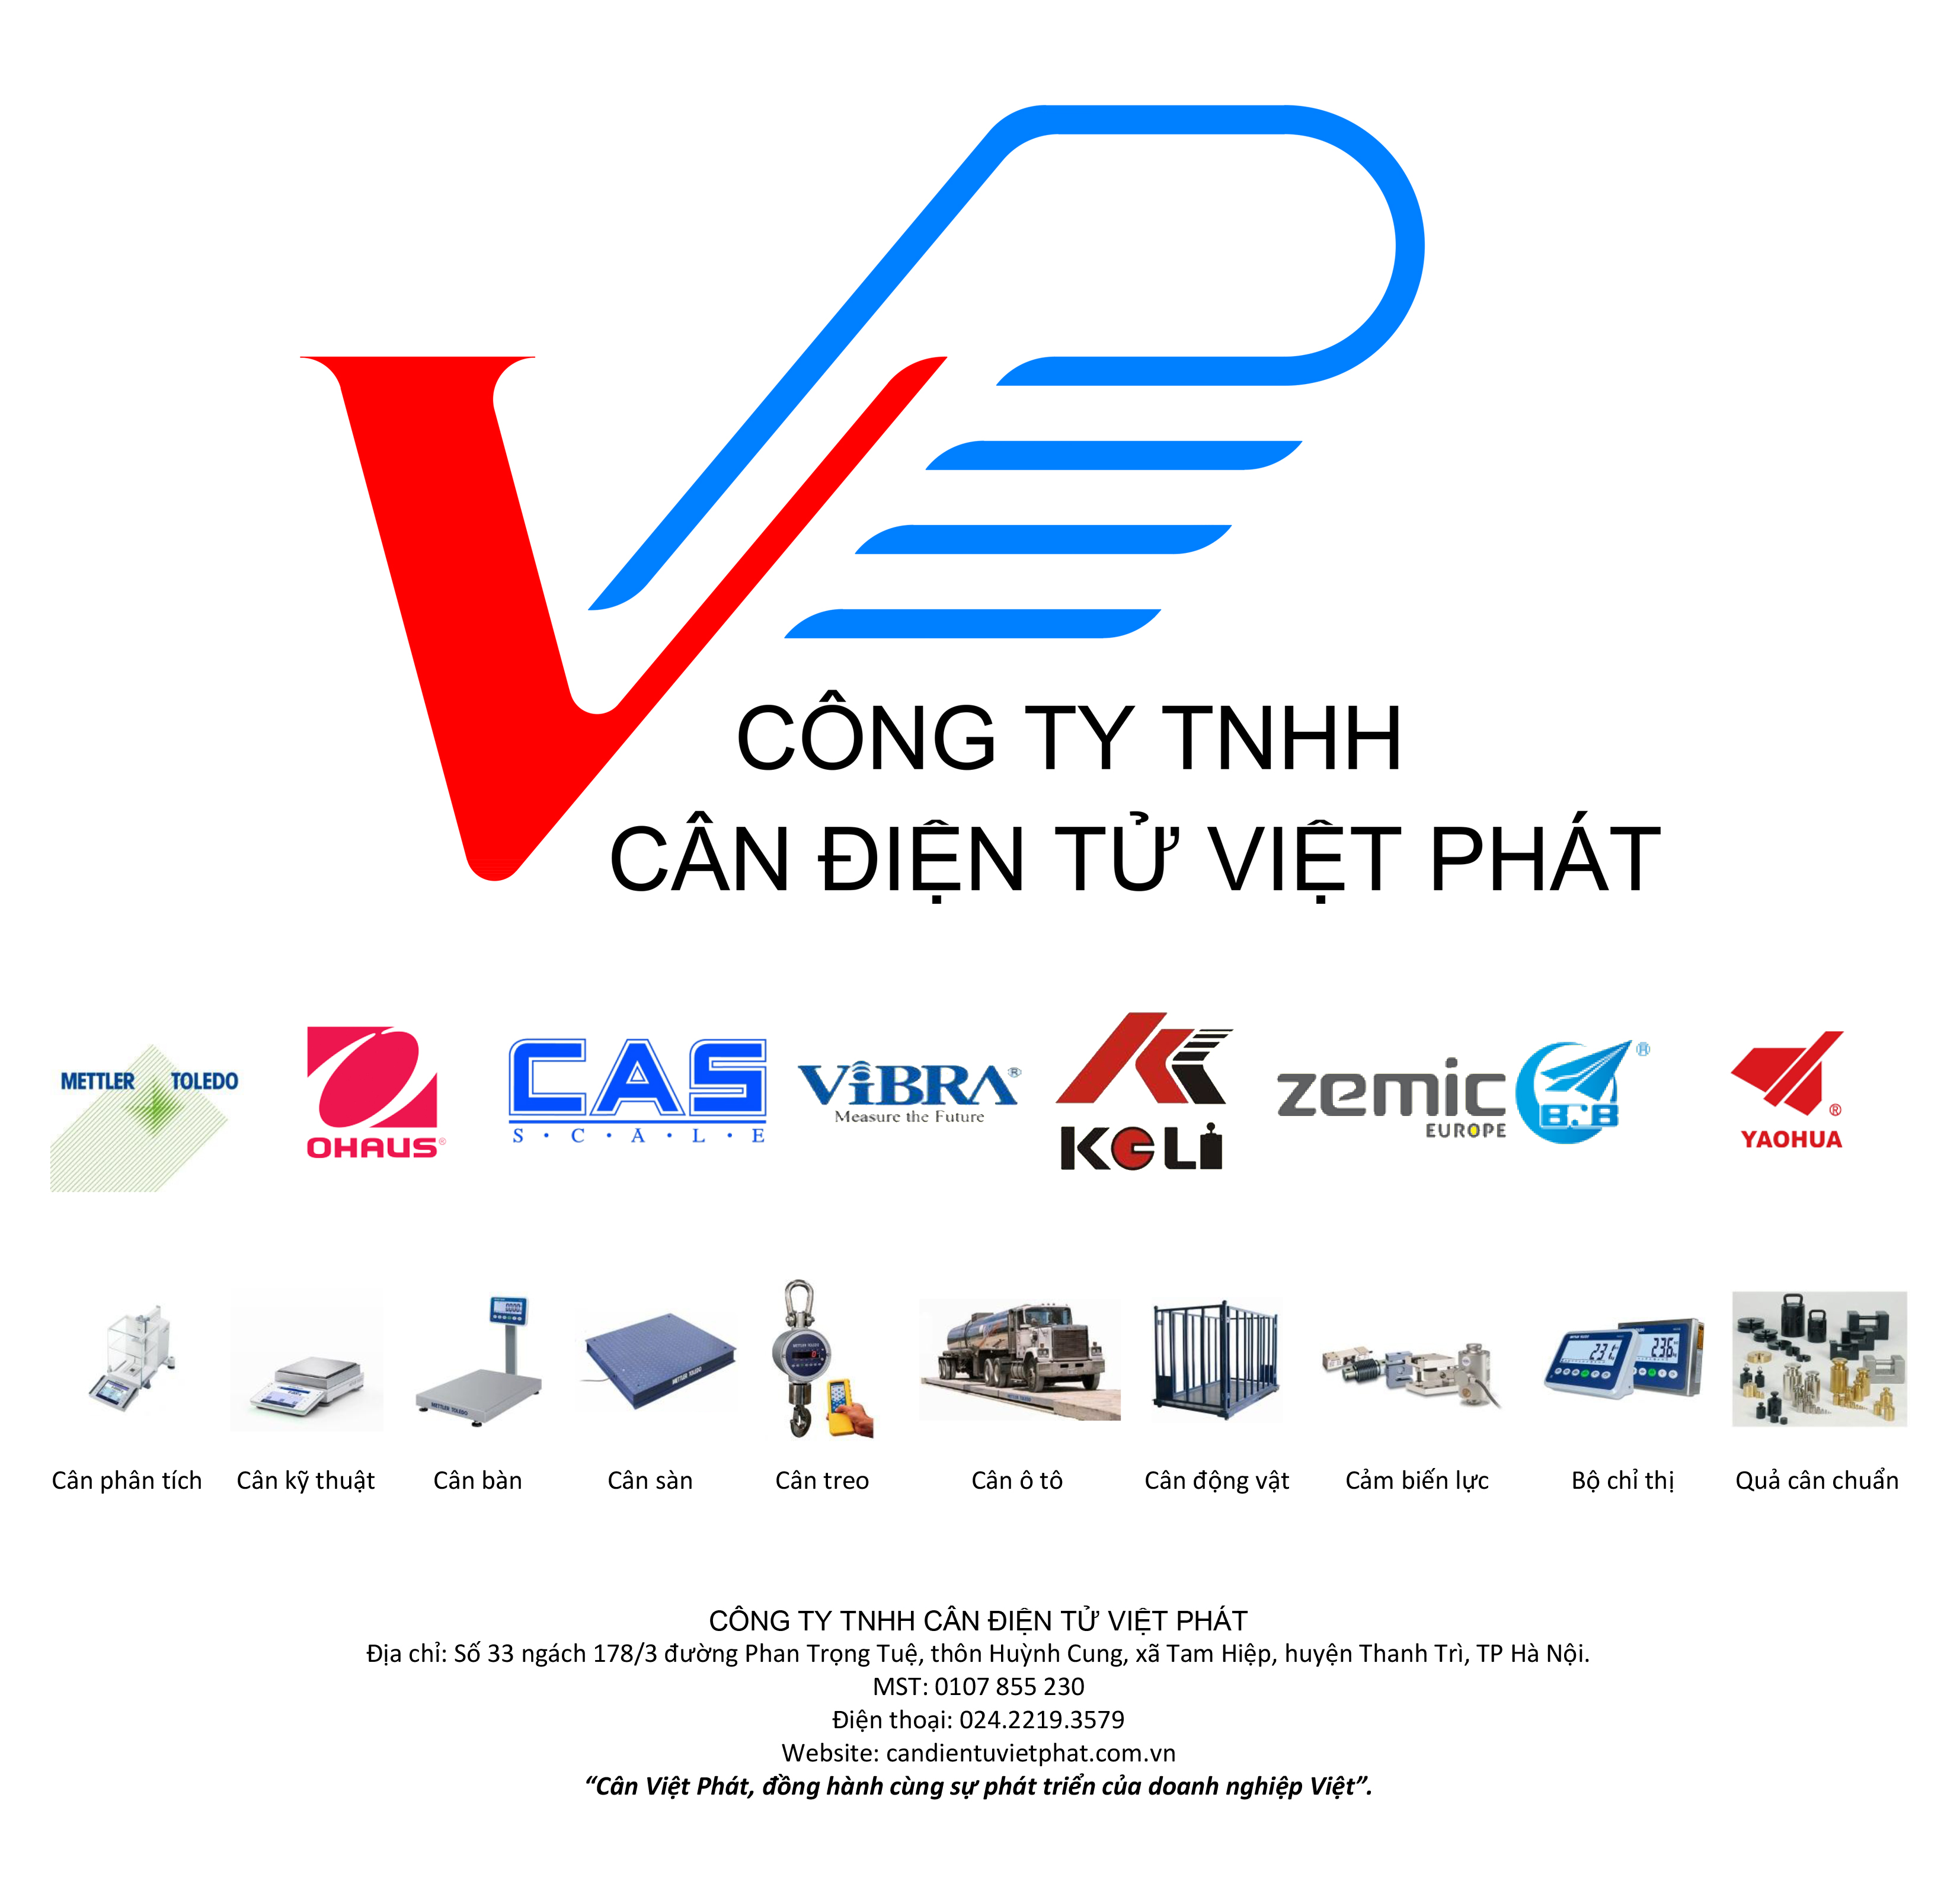 Công ty TNHH cân điện tử Việt Phát